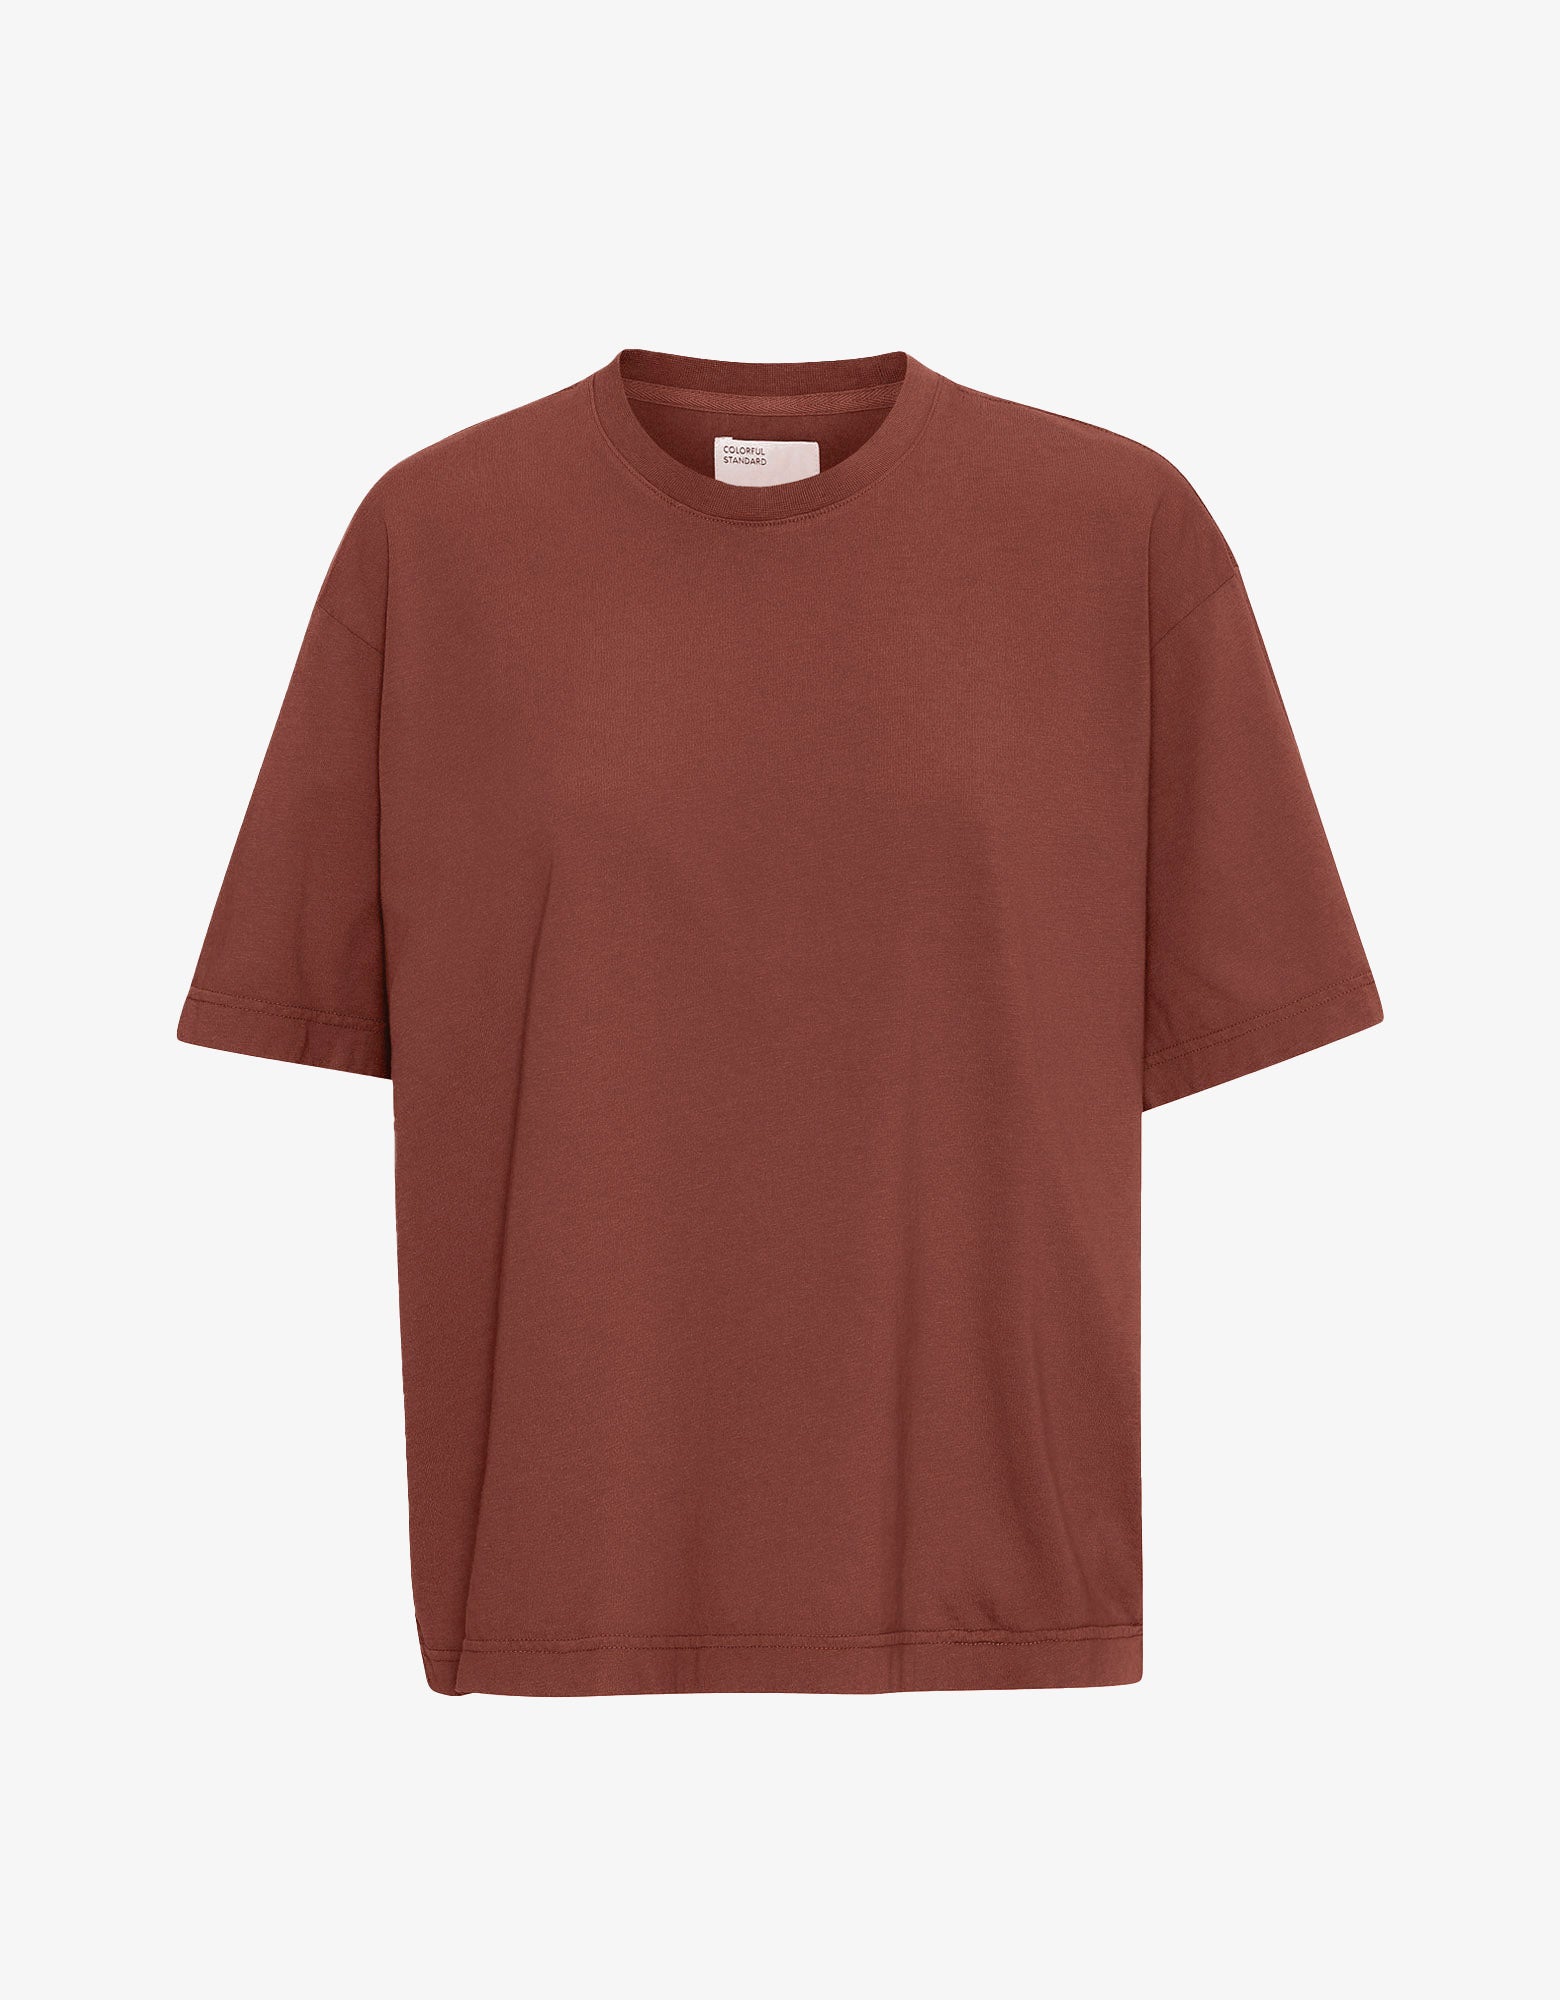 【安心直販】UPPER HIGHTS 『the shirt』browncottonshirt トップス